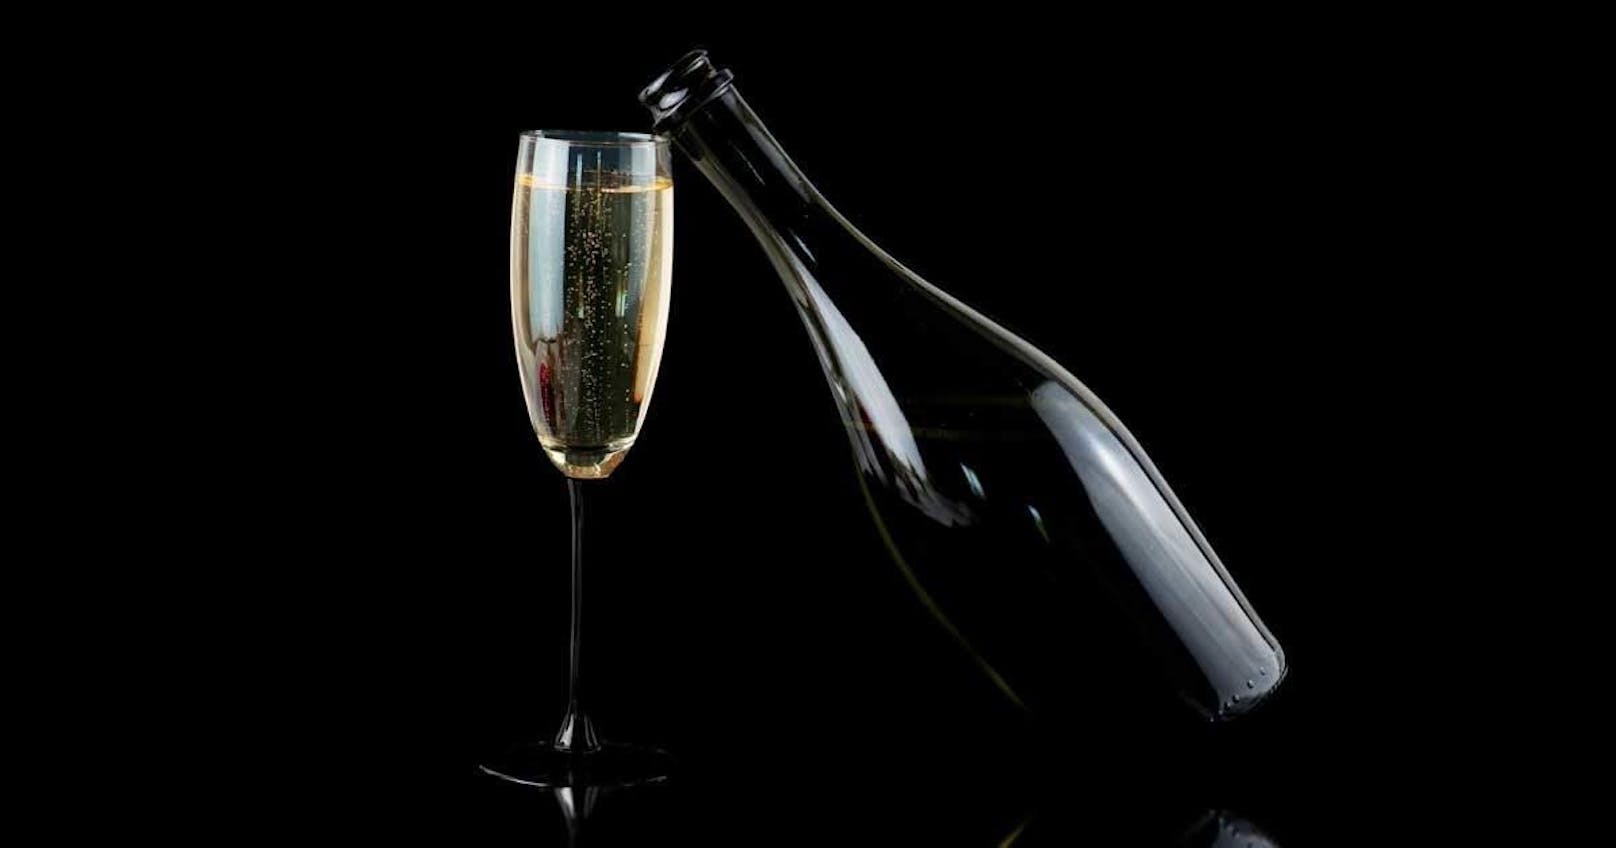 <b>Fakt 4: Das trinken wir zu Silvester</b>
Zum Jahreswechsel lassen wir die Korken knallen! Und stoßen gerne mit einem Glas Sekt oder Champagner aufs neue Jahr an. Im Jahr 2016 wurden weltweit insgesamt 2,6 Milliarden Euro umgesetzt, das sind 91,3 Millionen Sektflaschen.
